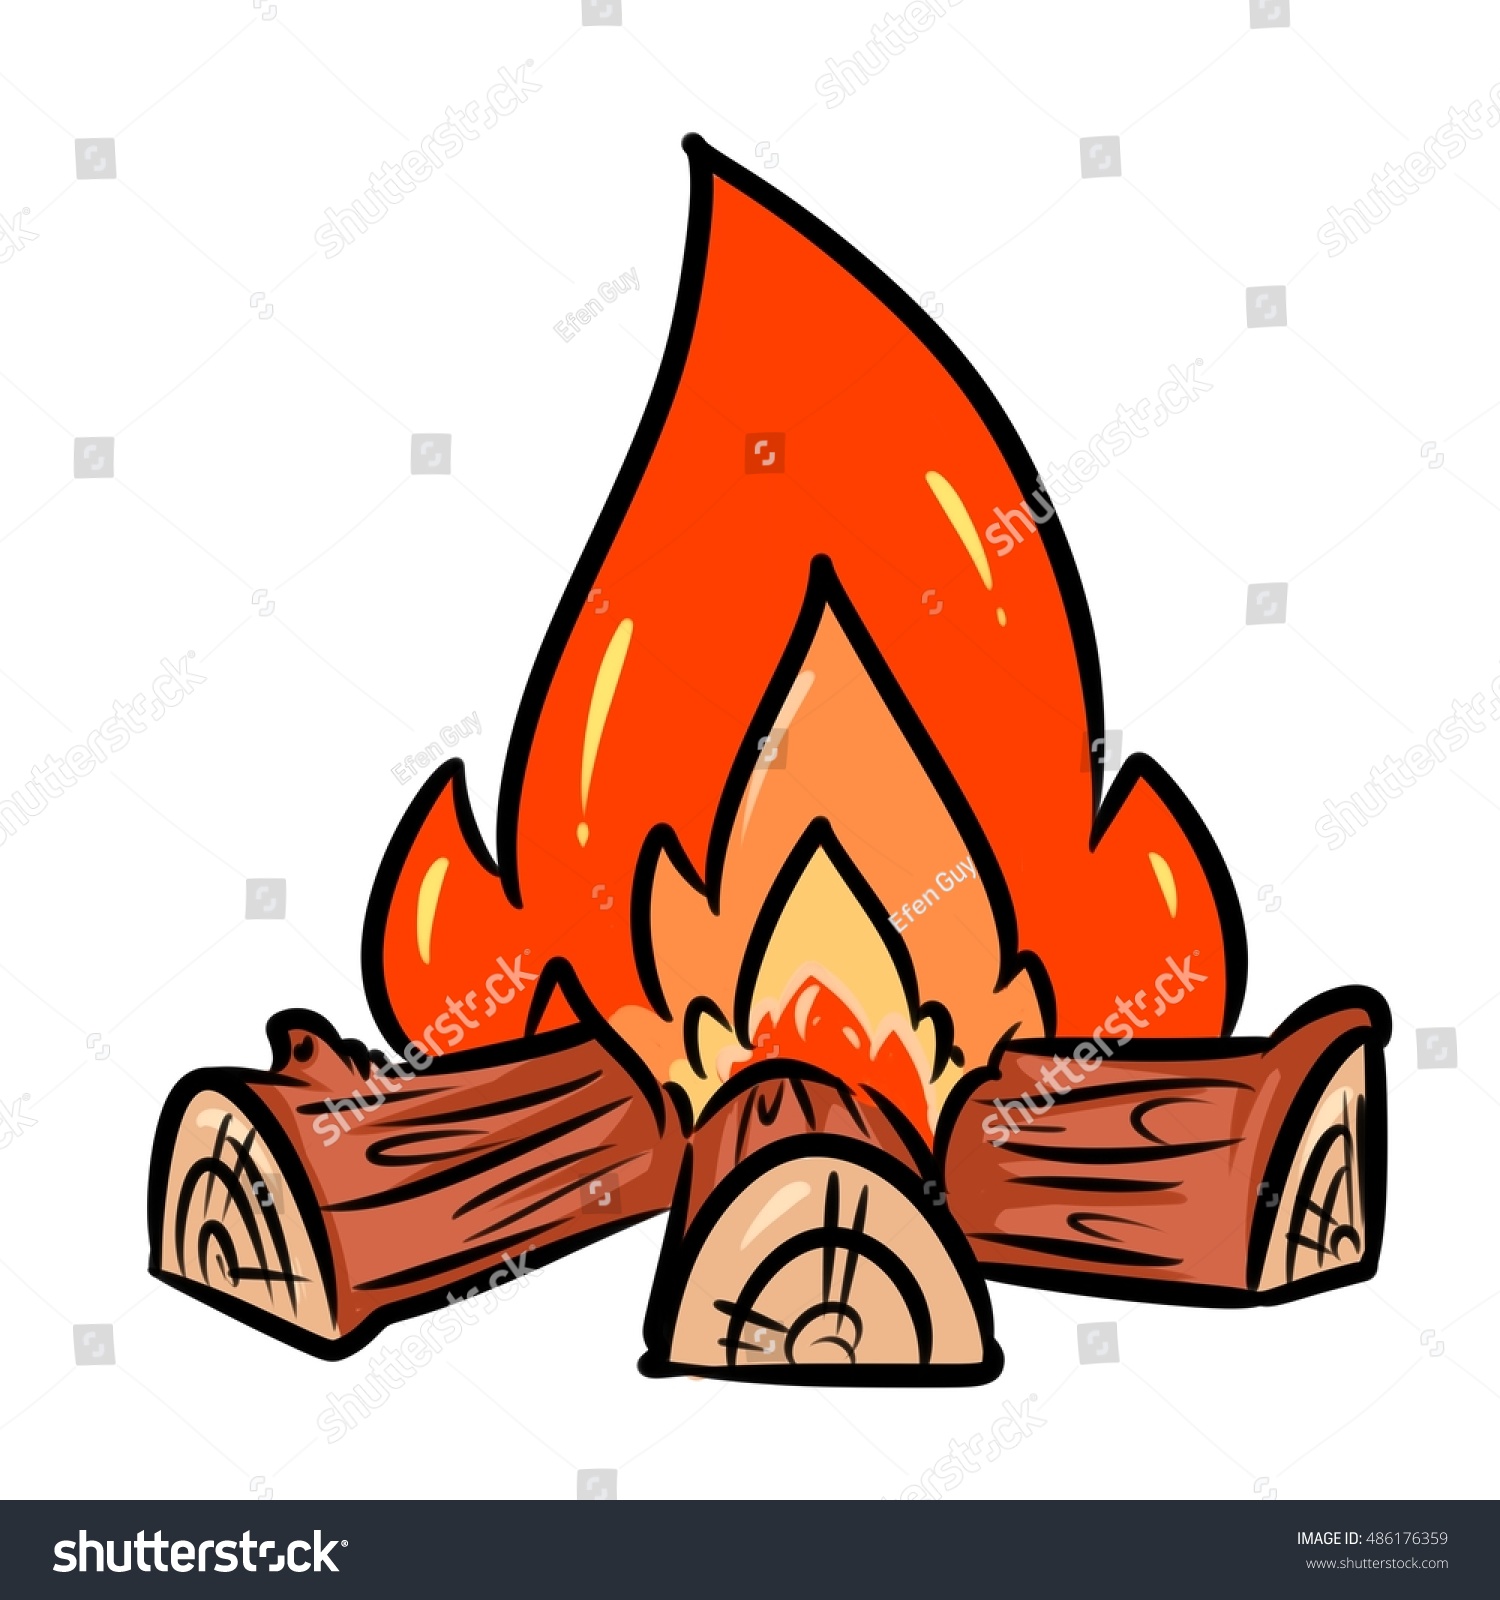 Огонь с дровами для детей